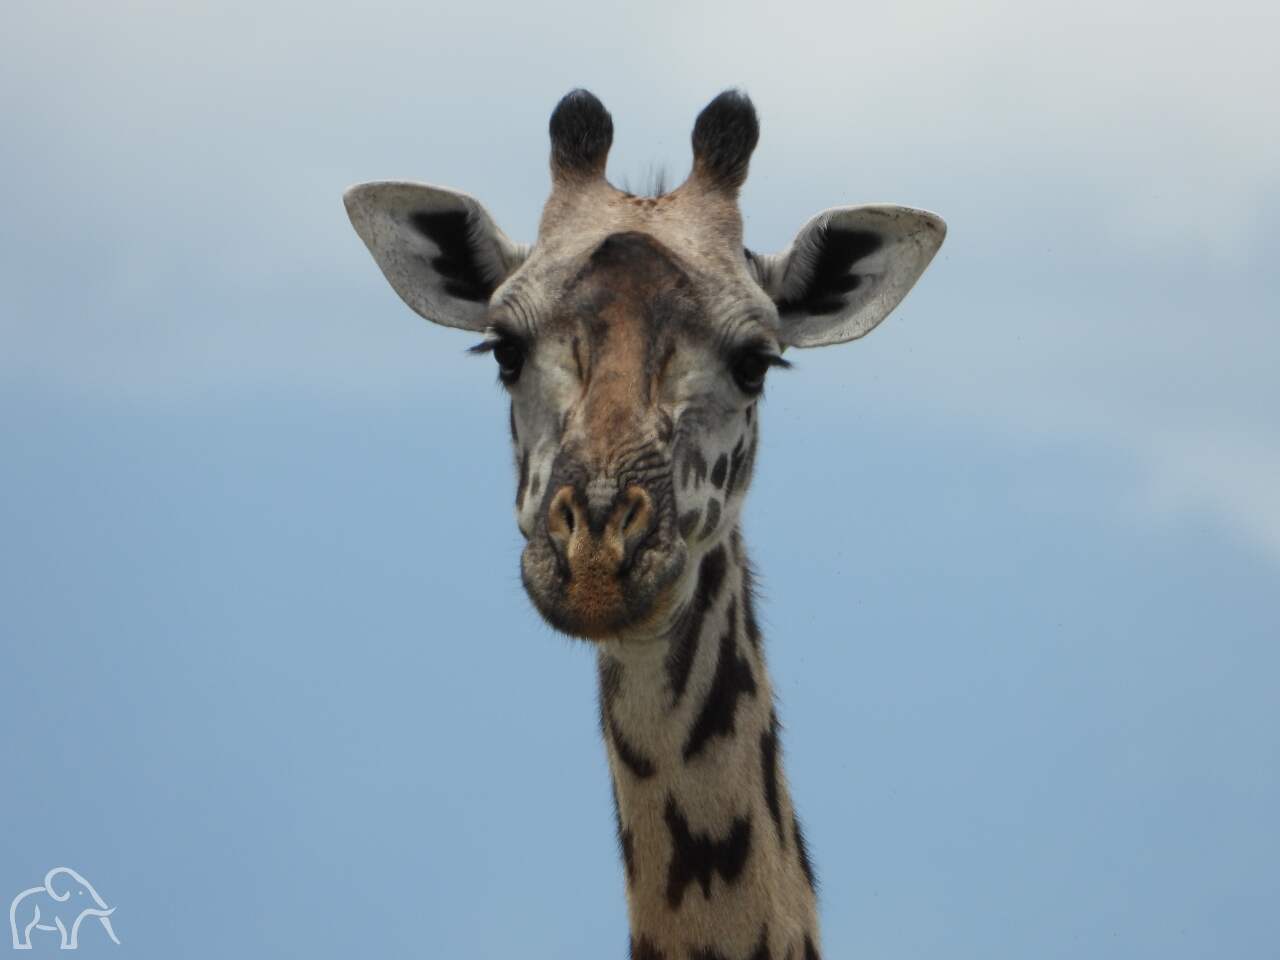 Safari Tanzania alle safari reizen. Hoofd van giraf die je recht aankijkt en heel dichtbij 